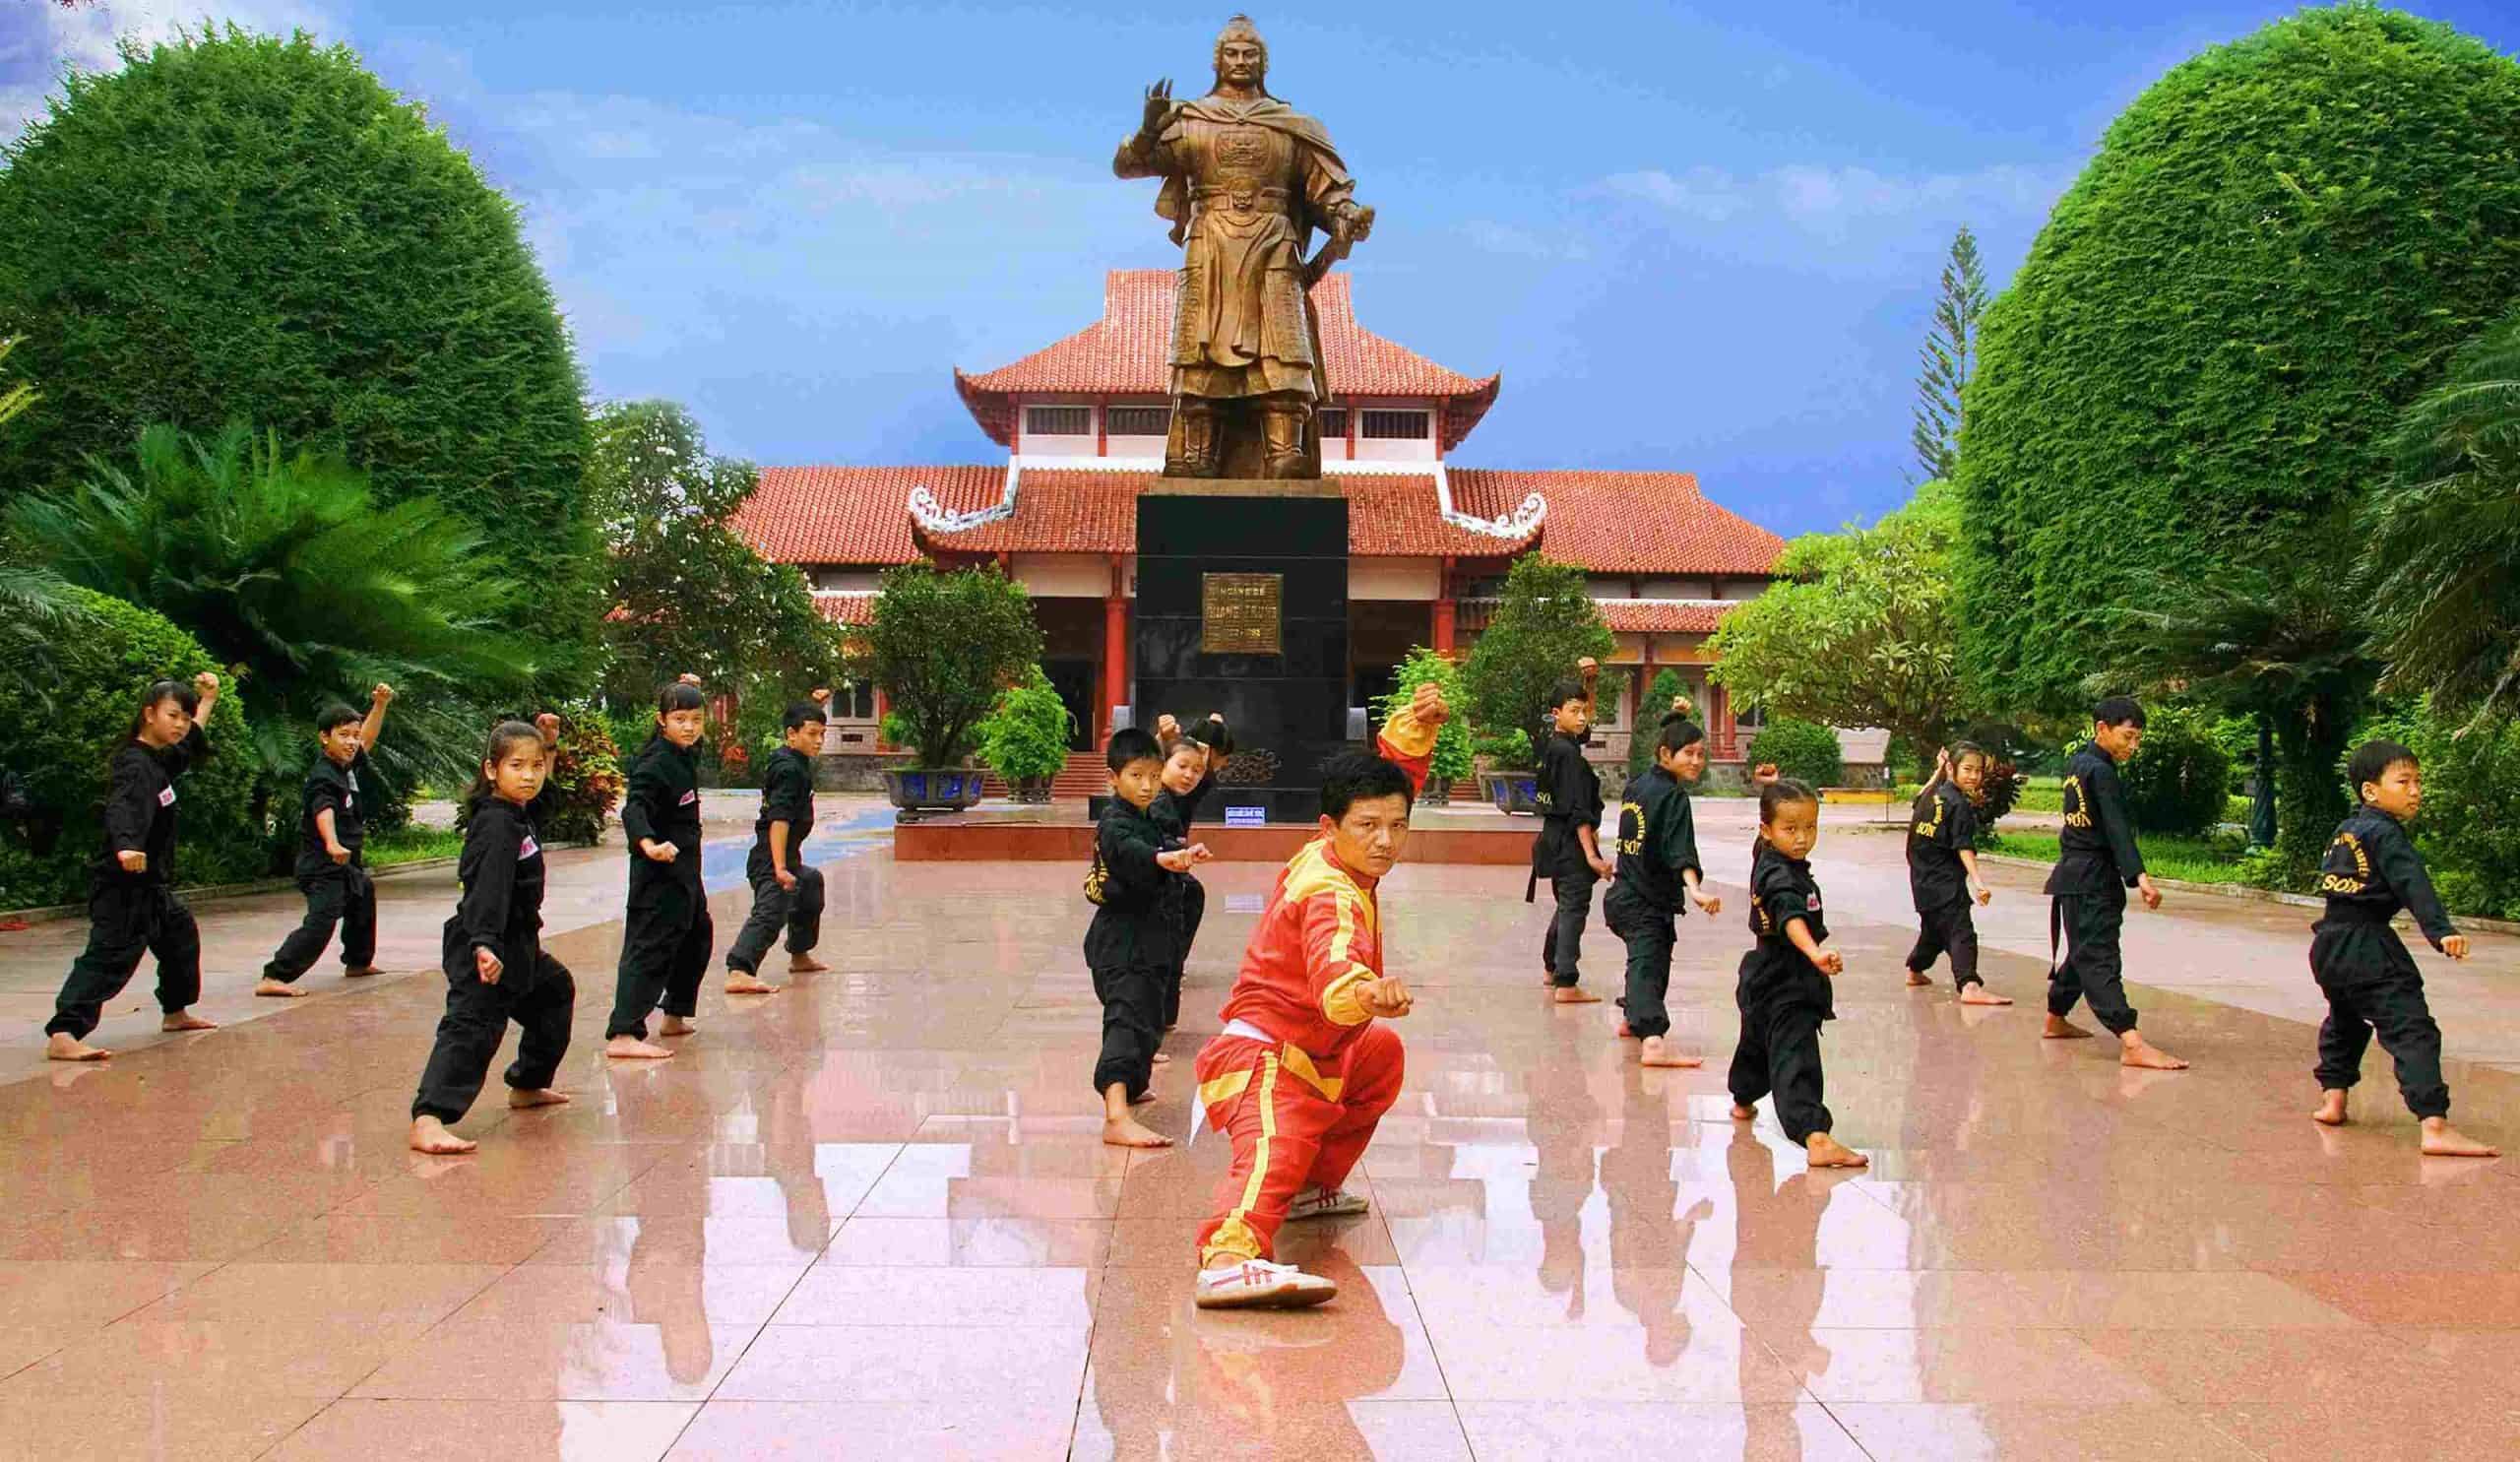 Du lịch Miền Trung - Bình Định - Quy Nhơn - Phú Yên mùa Thu 4 ngày từ Sài Gòn